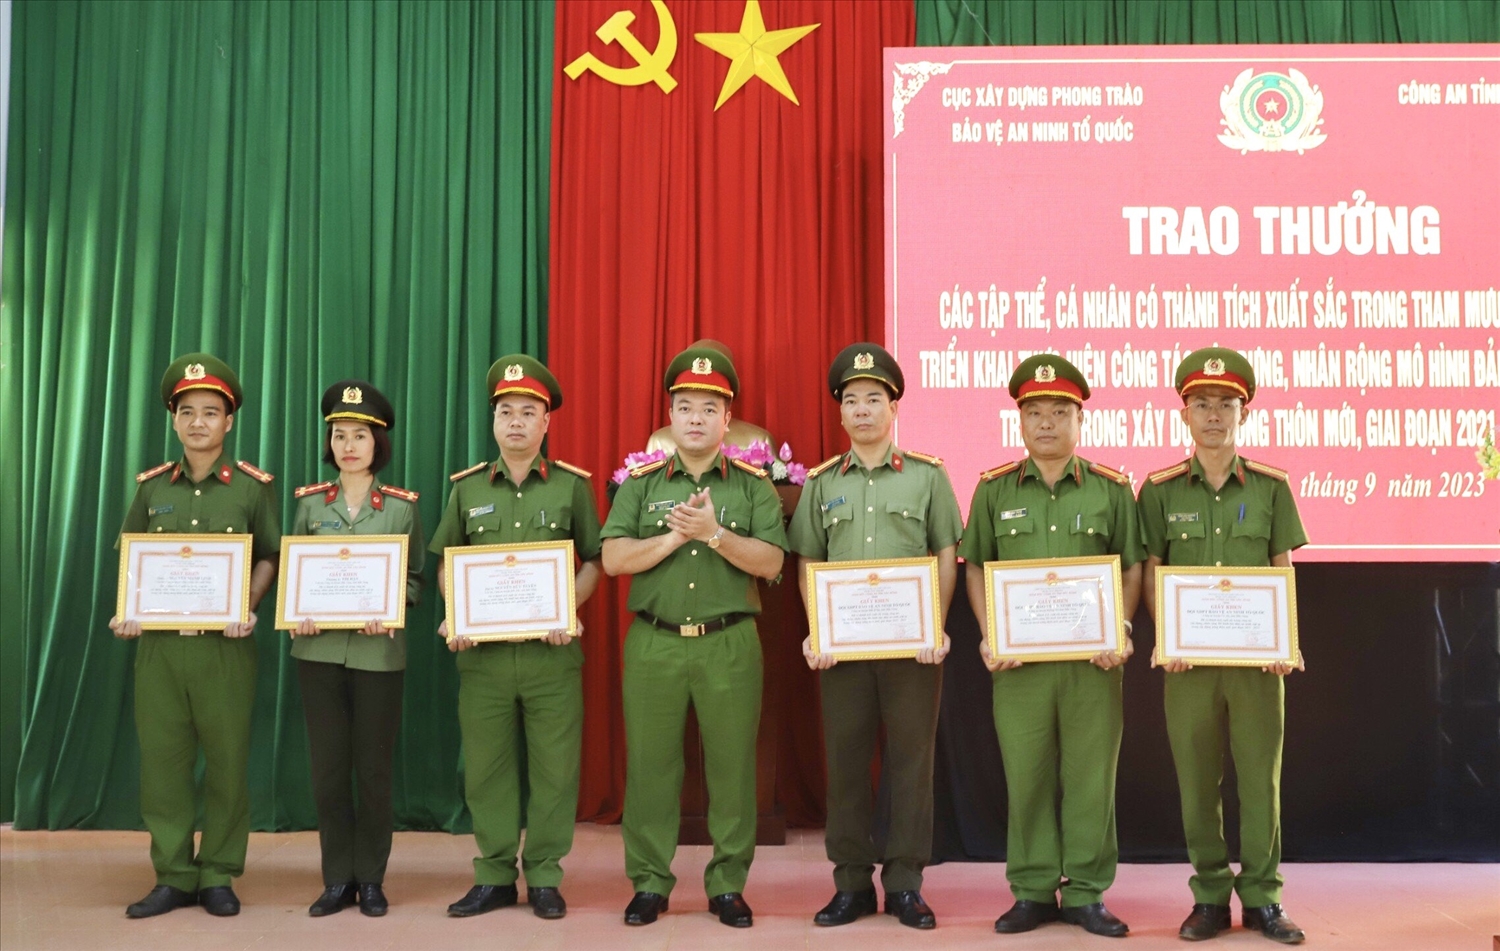 Trung tá Nguyễn Hữu Đức, Phó Giám đốc Công an tỉnh Đắk Nông trao giấy khen cho các tập thể, cá nhân